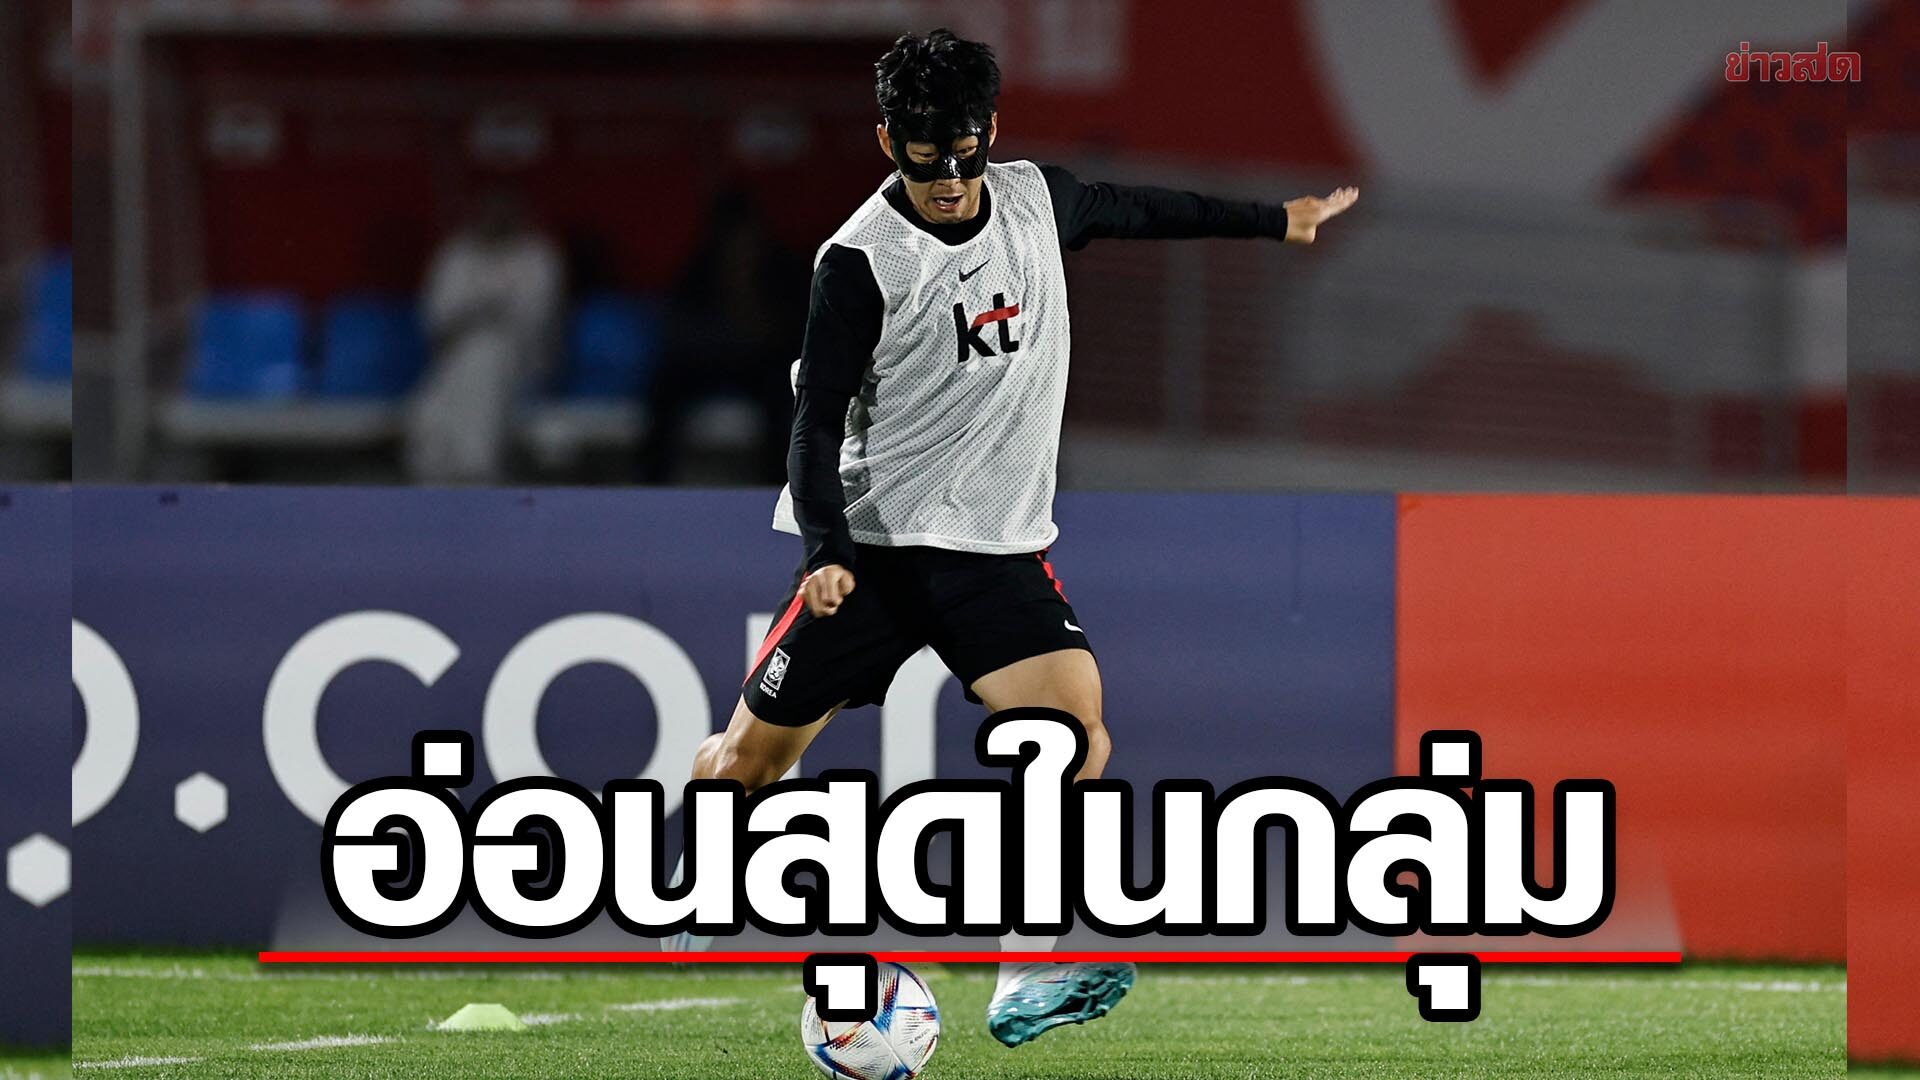 ซน ฮึงมิน เผยมึนไปเลยตอนเห็นกรุ๊ปบอลโลก – รับเกาหลีใต้อ่อนสุดในกลุ่มเอช